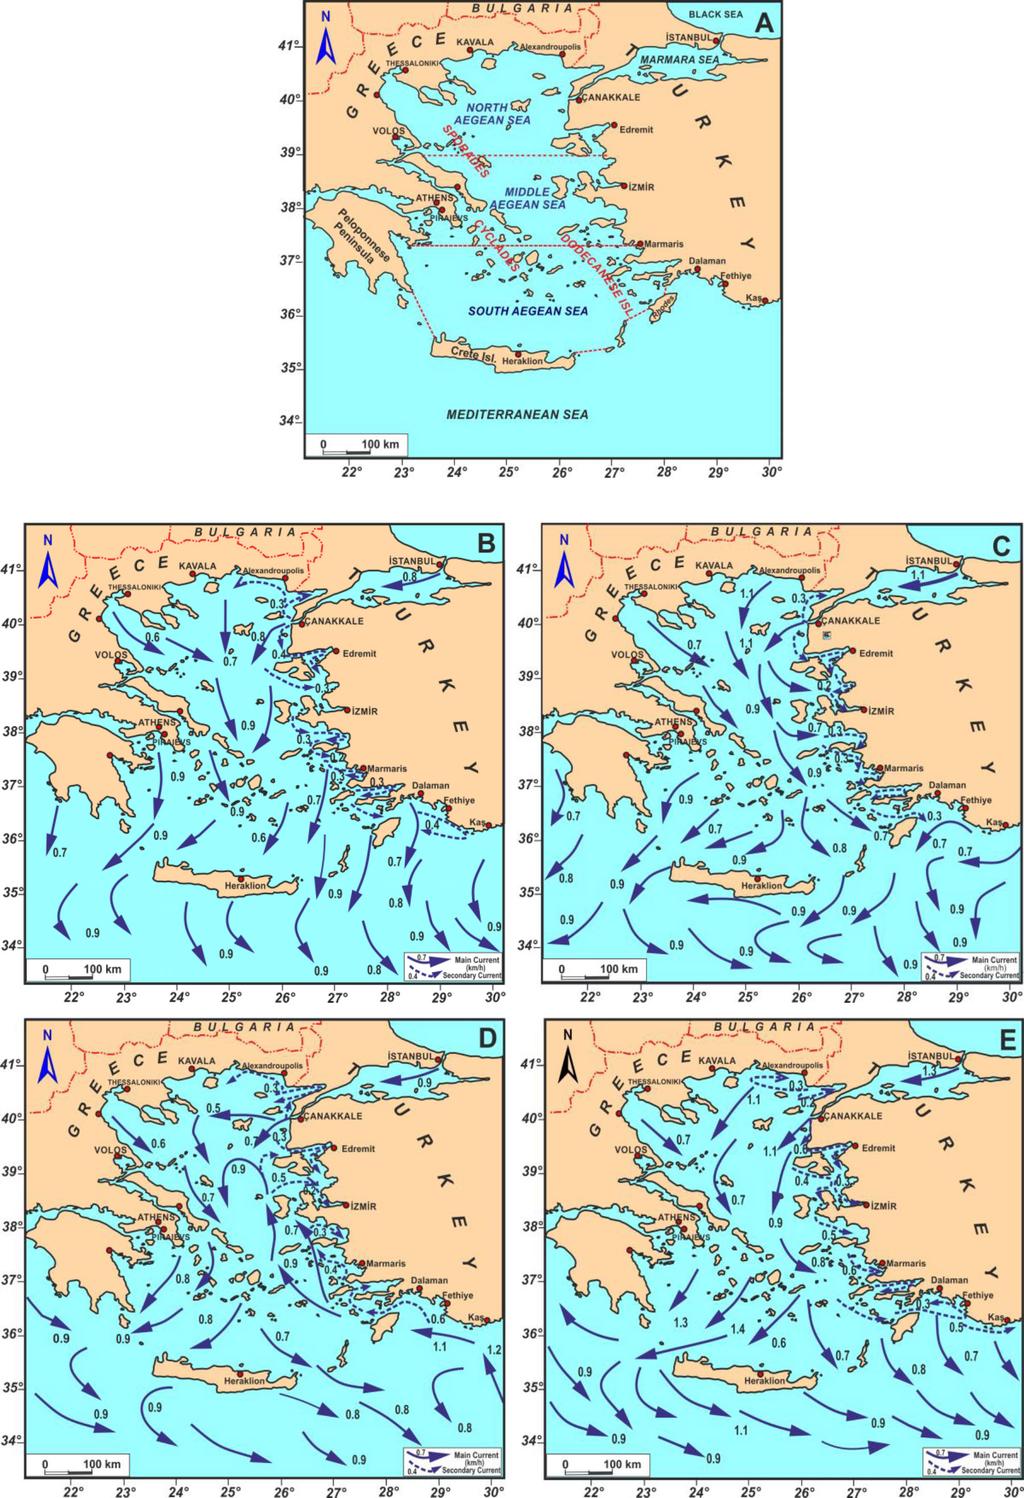 214 Meriç vd. / Yerbilimleri, 2018, 39 (3), 207-220 Şekil 2. Ege Denizi mevsimsel akıntıları.